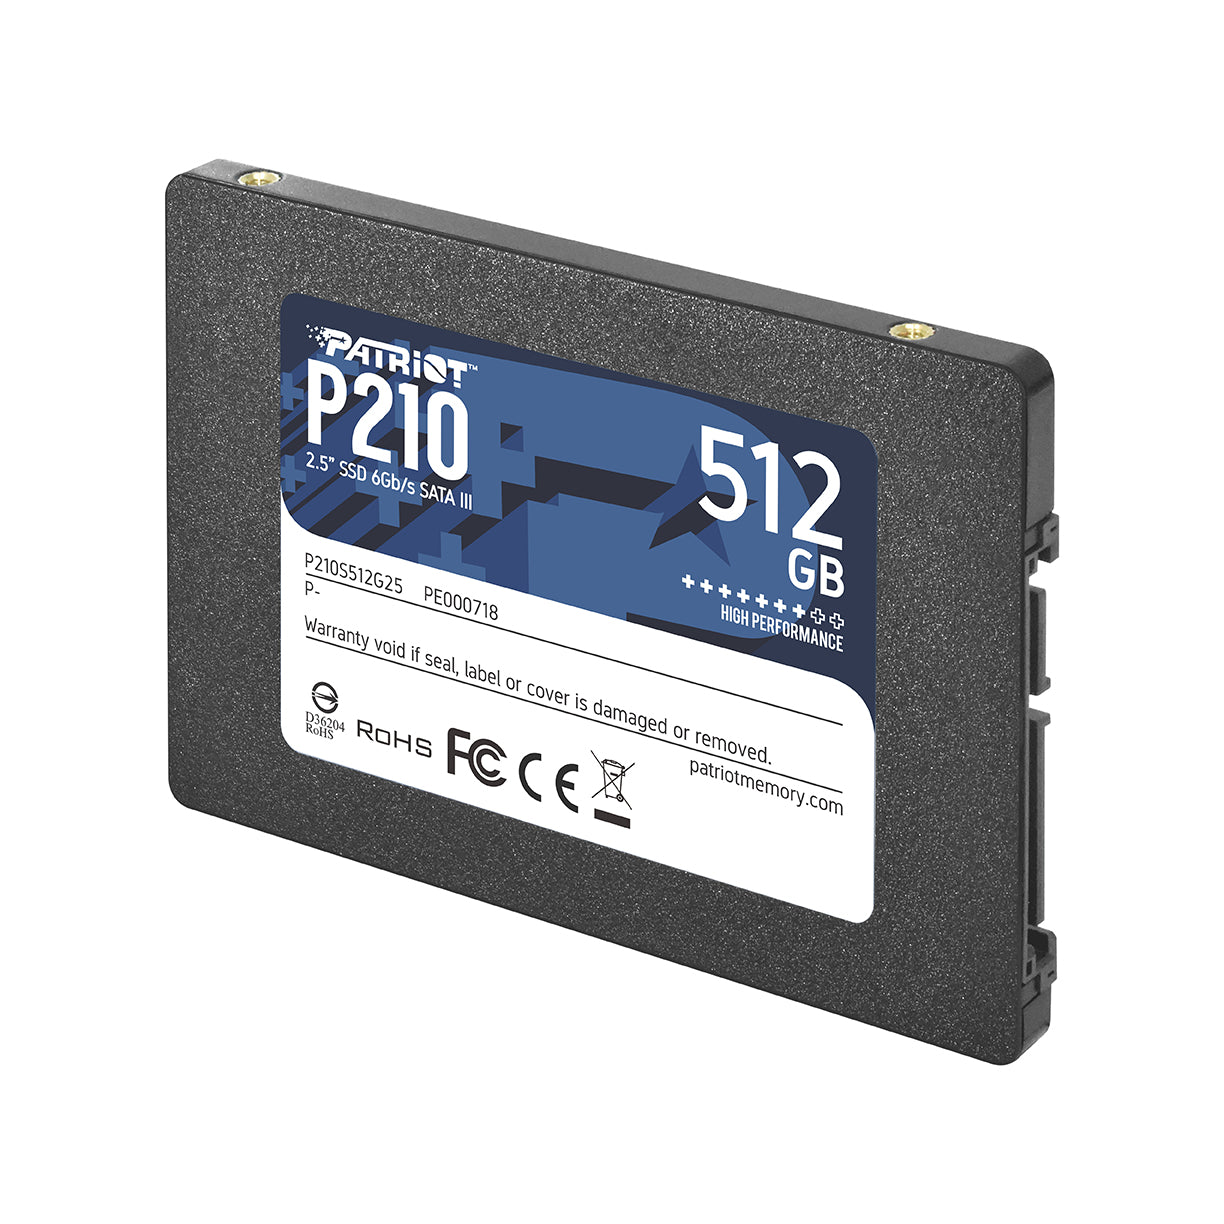 Disco duro solido Patriot 512GB Sata 2.5" (P210S512G25)